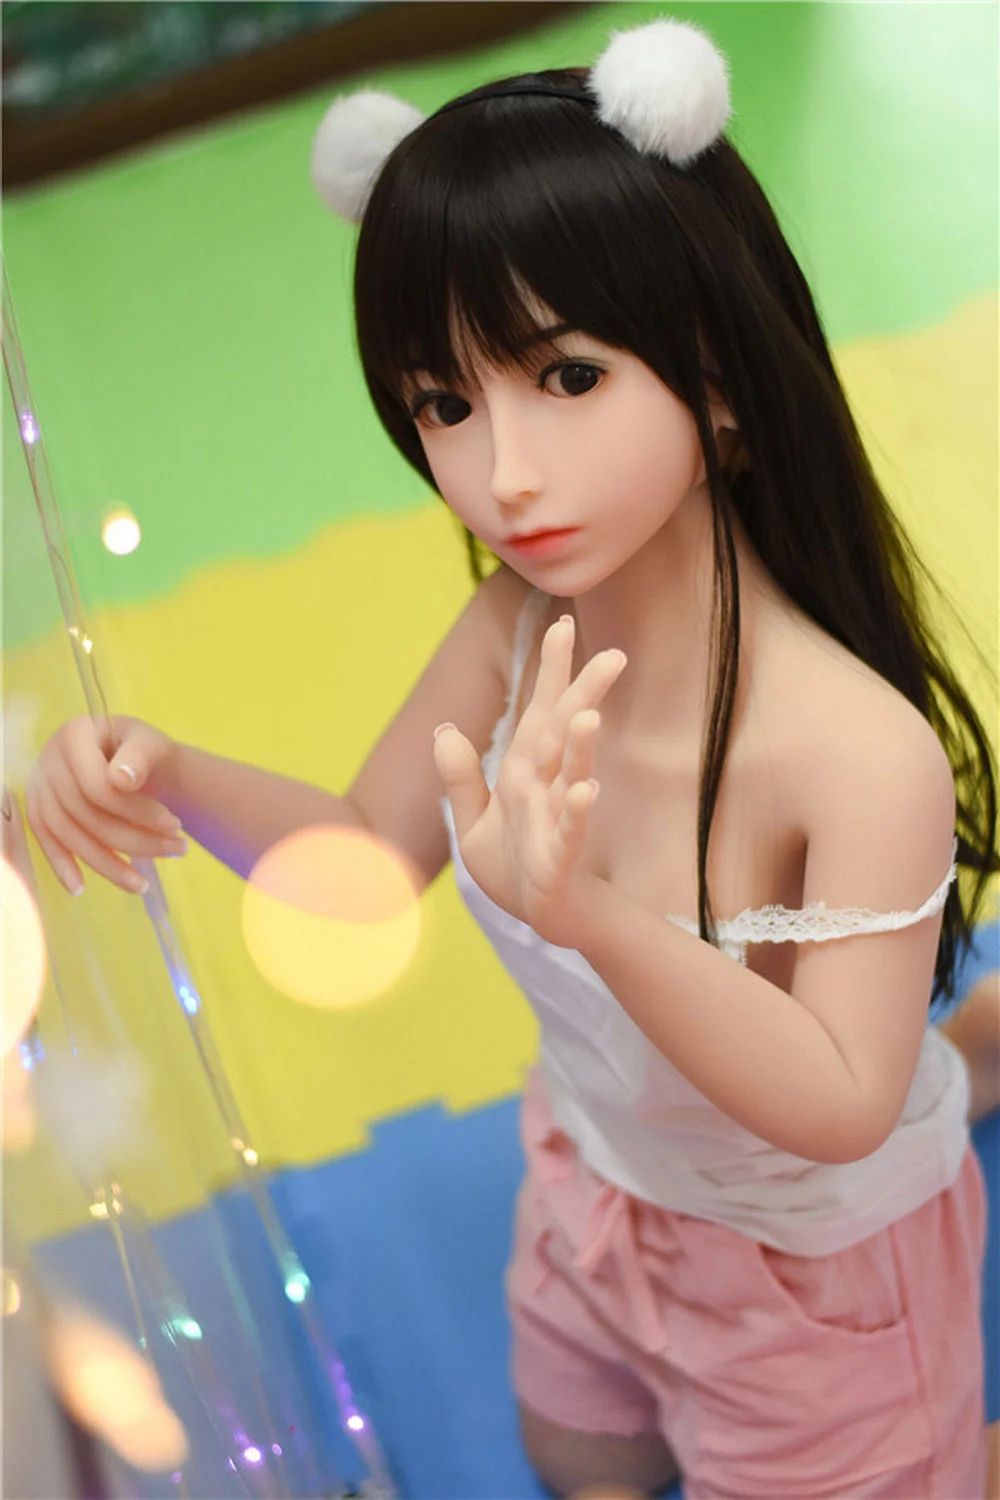 mini sex doll5 4